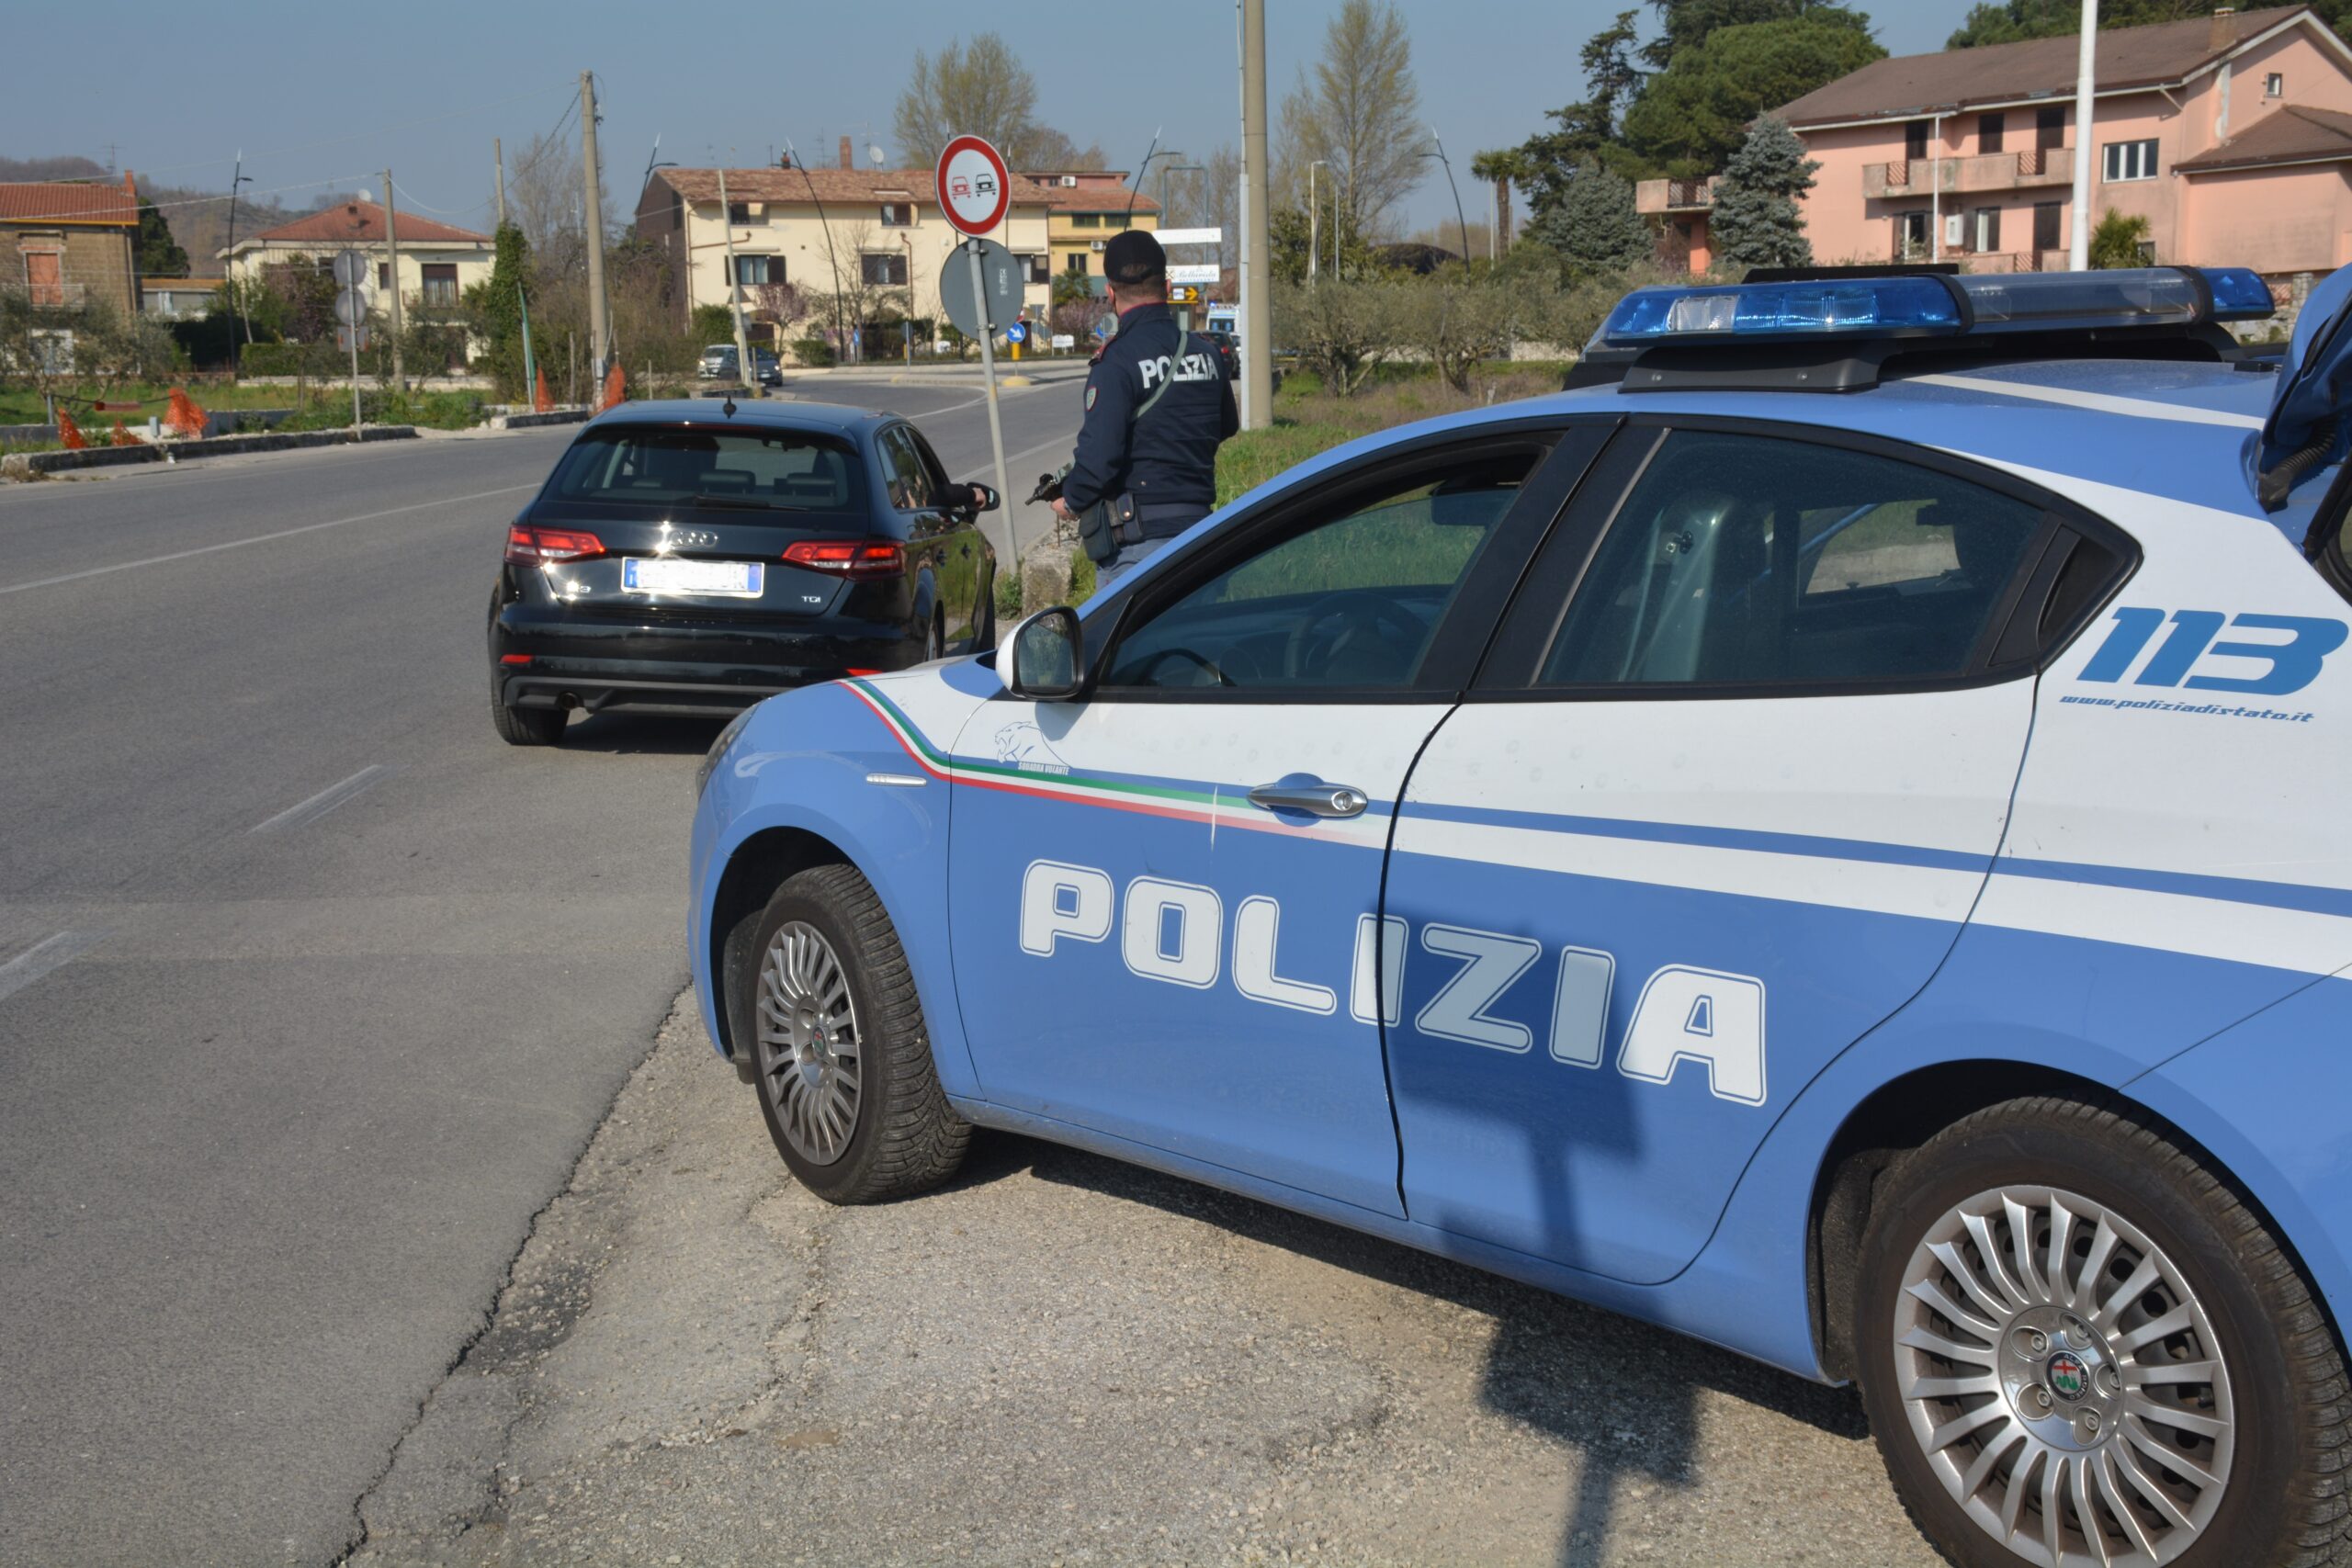 Controlli della Polizia a Benevento e Telese Terme: sequestrati coltelli